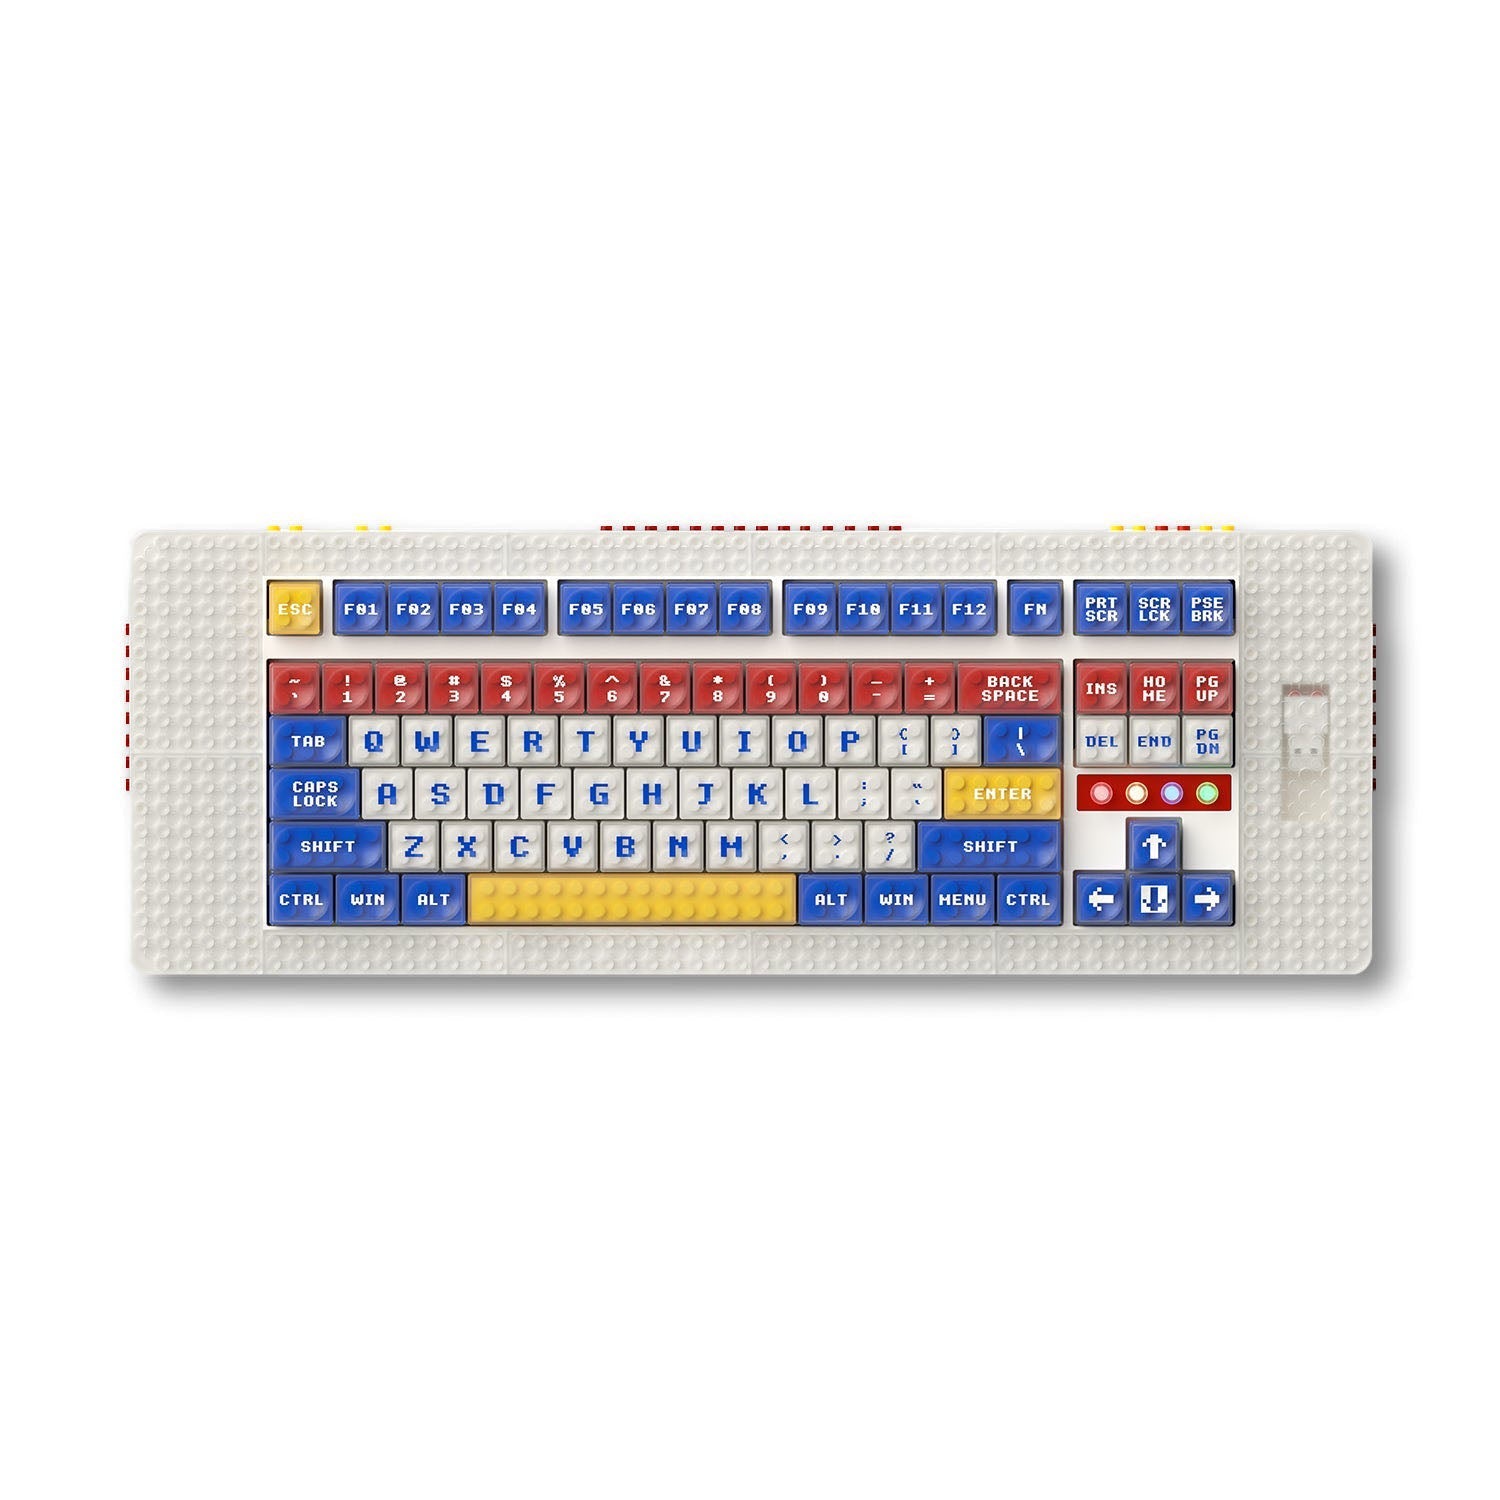 MelGeek Pixel, le premier clavier mécanique compatible Brick au monde